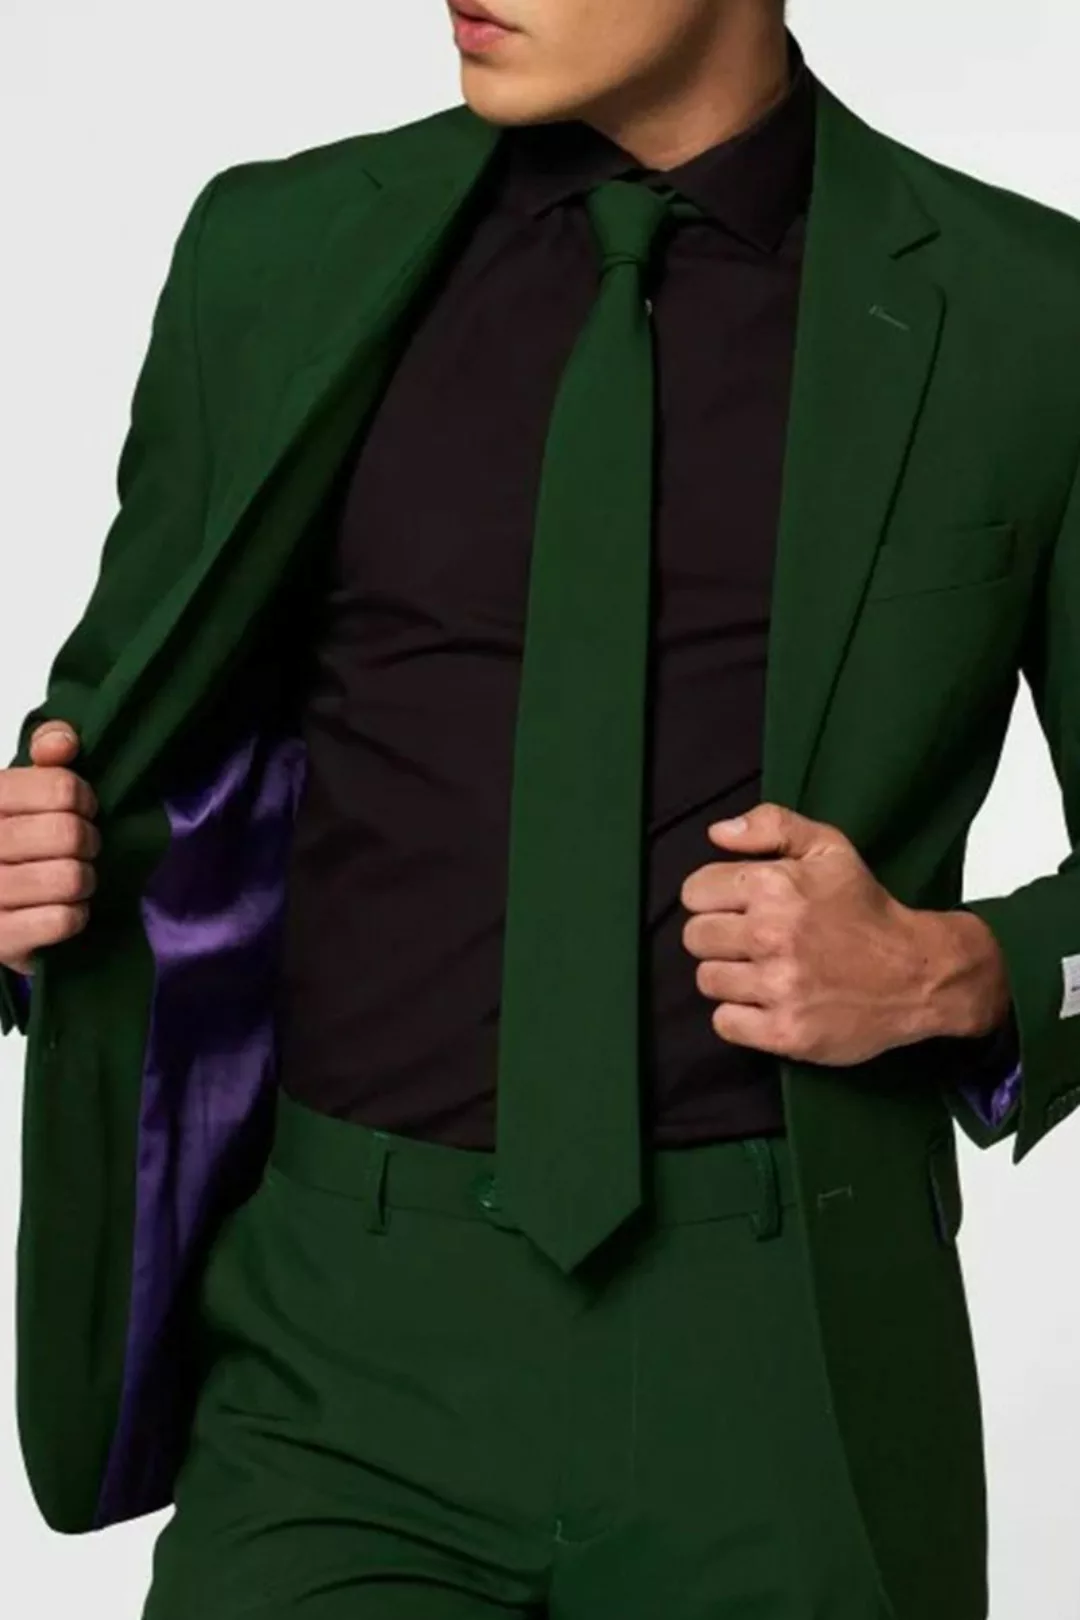 OppoSuits Anzug Glorious Green - Größe 52 günstig online kaufen